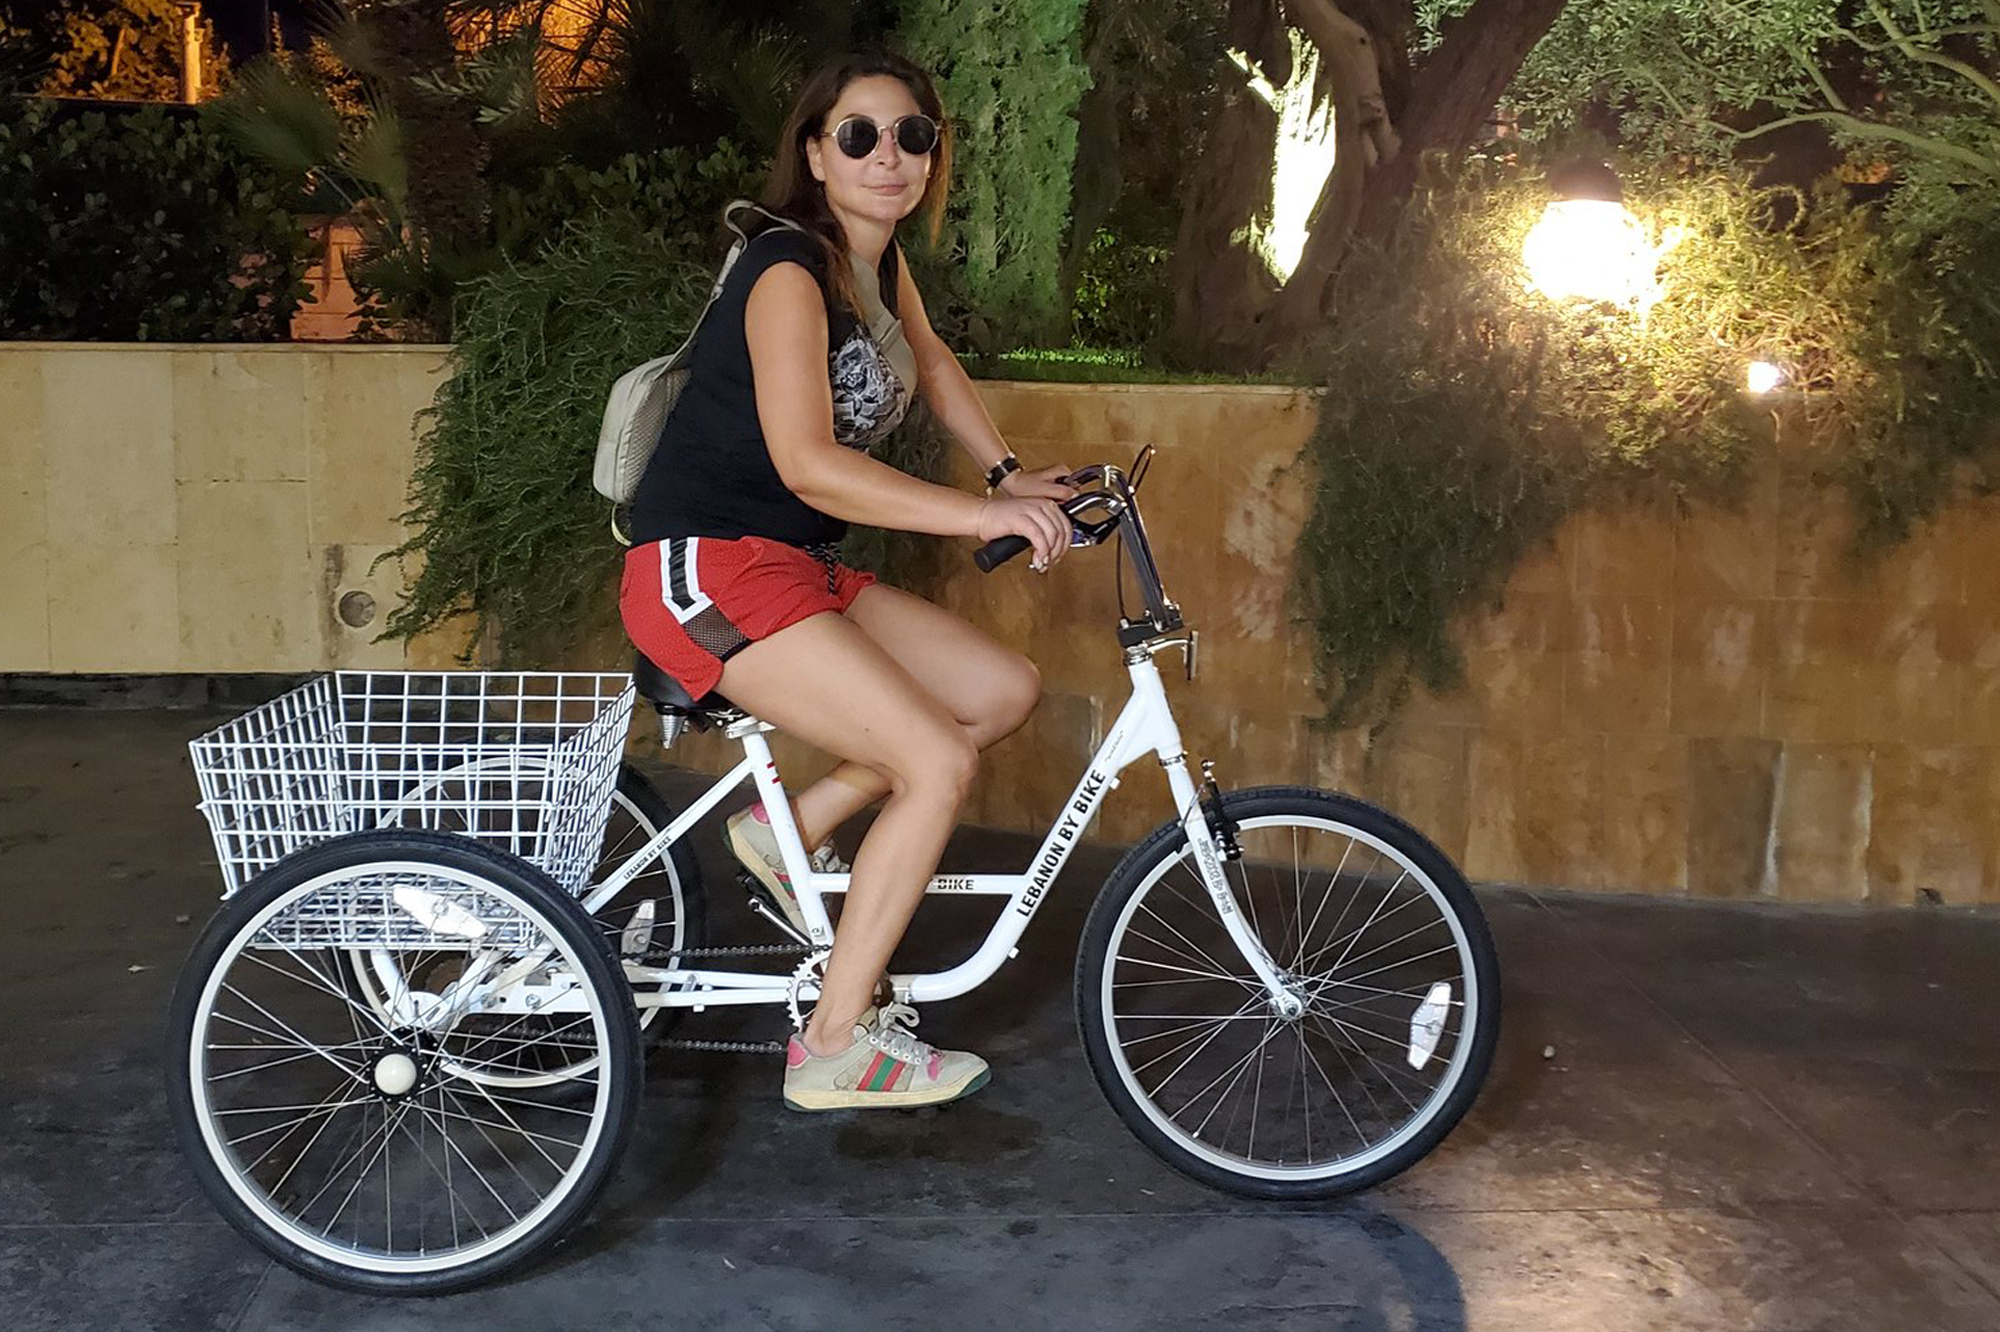 اليسا على الدراجة في شوارع بيروت